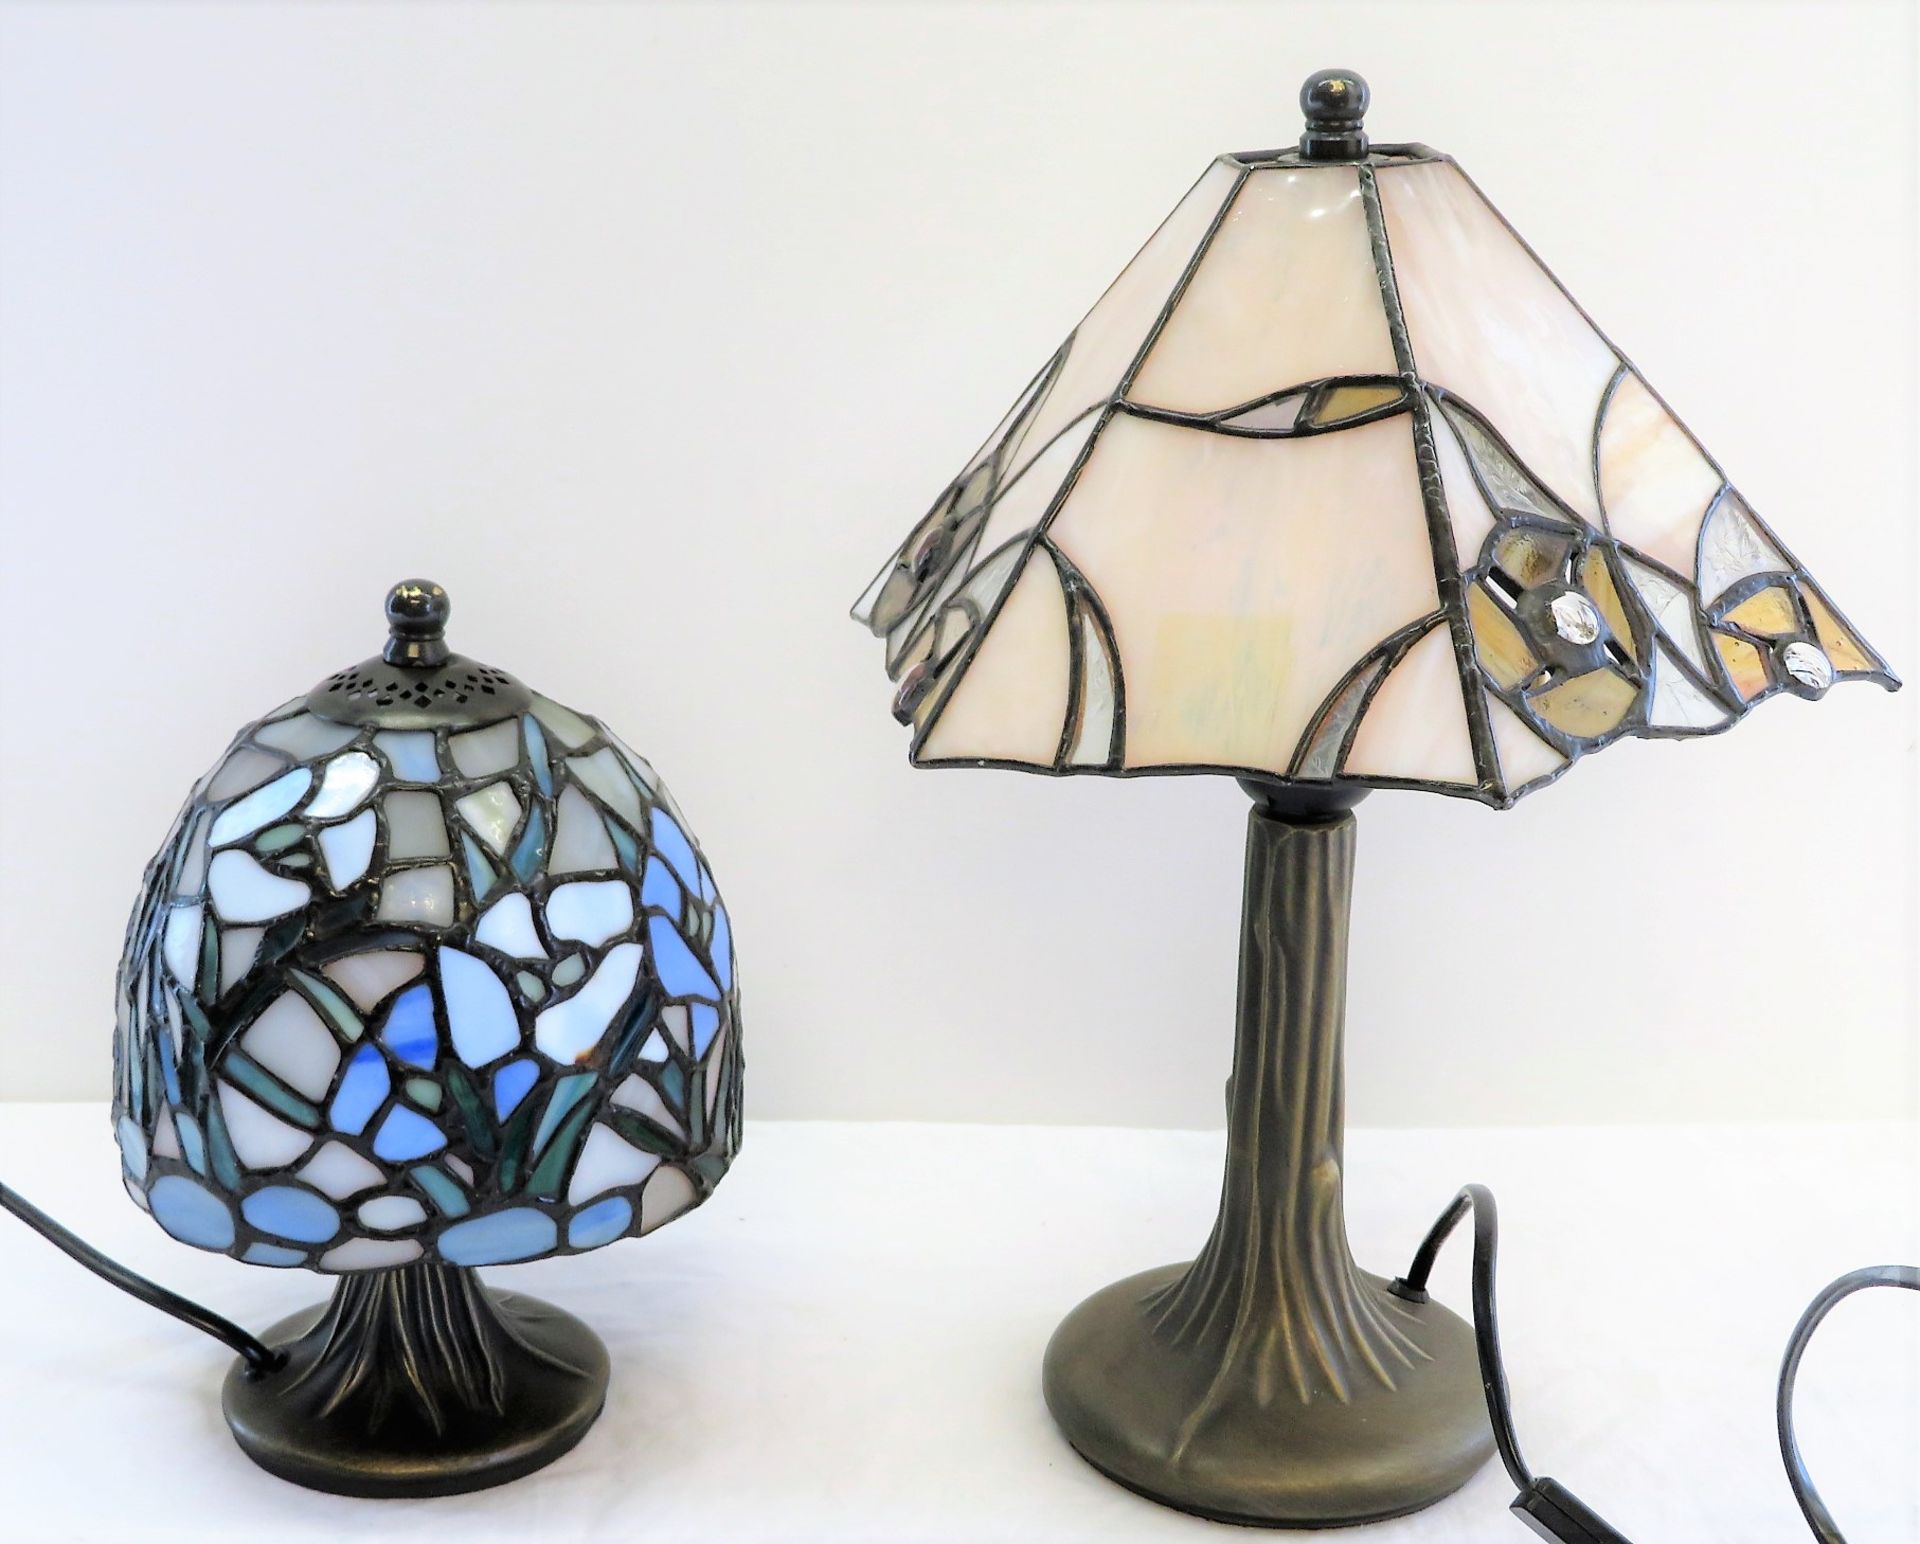 2 Tiffany-Stil Tischlampen, Schirme mit farbiger Bleiverglasung, Füße vegetabil modellierter Messin